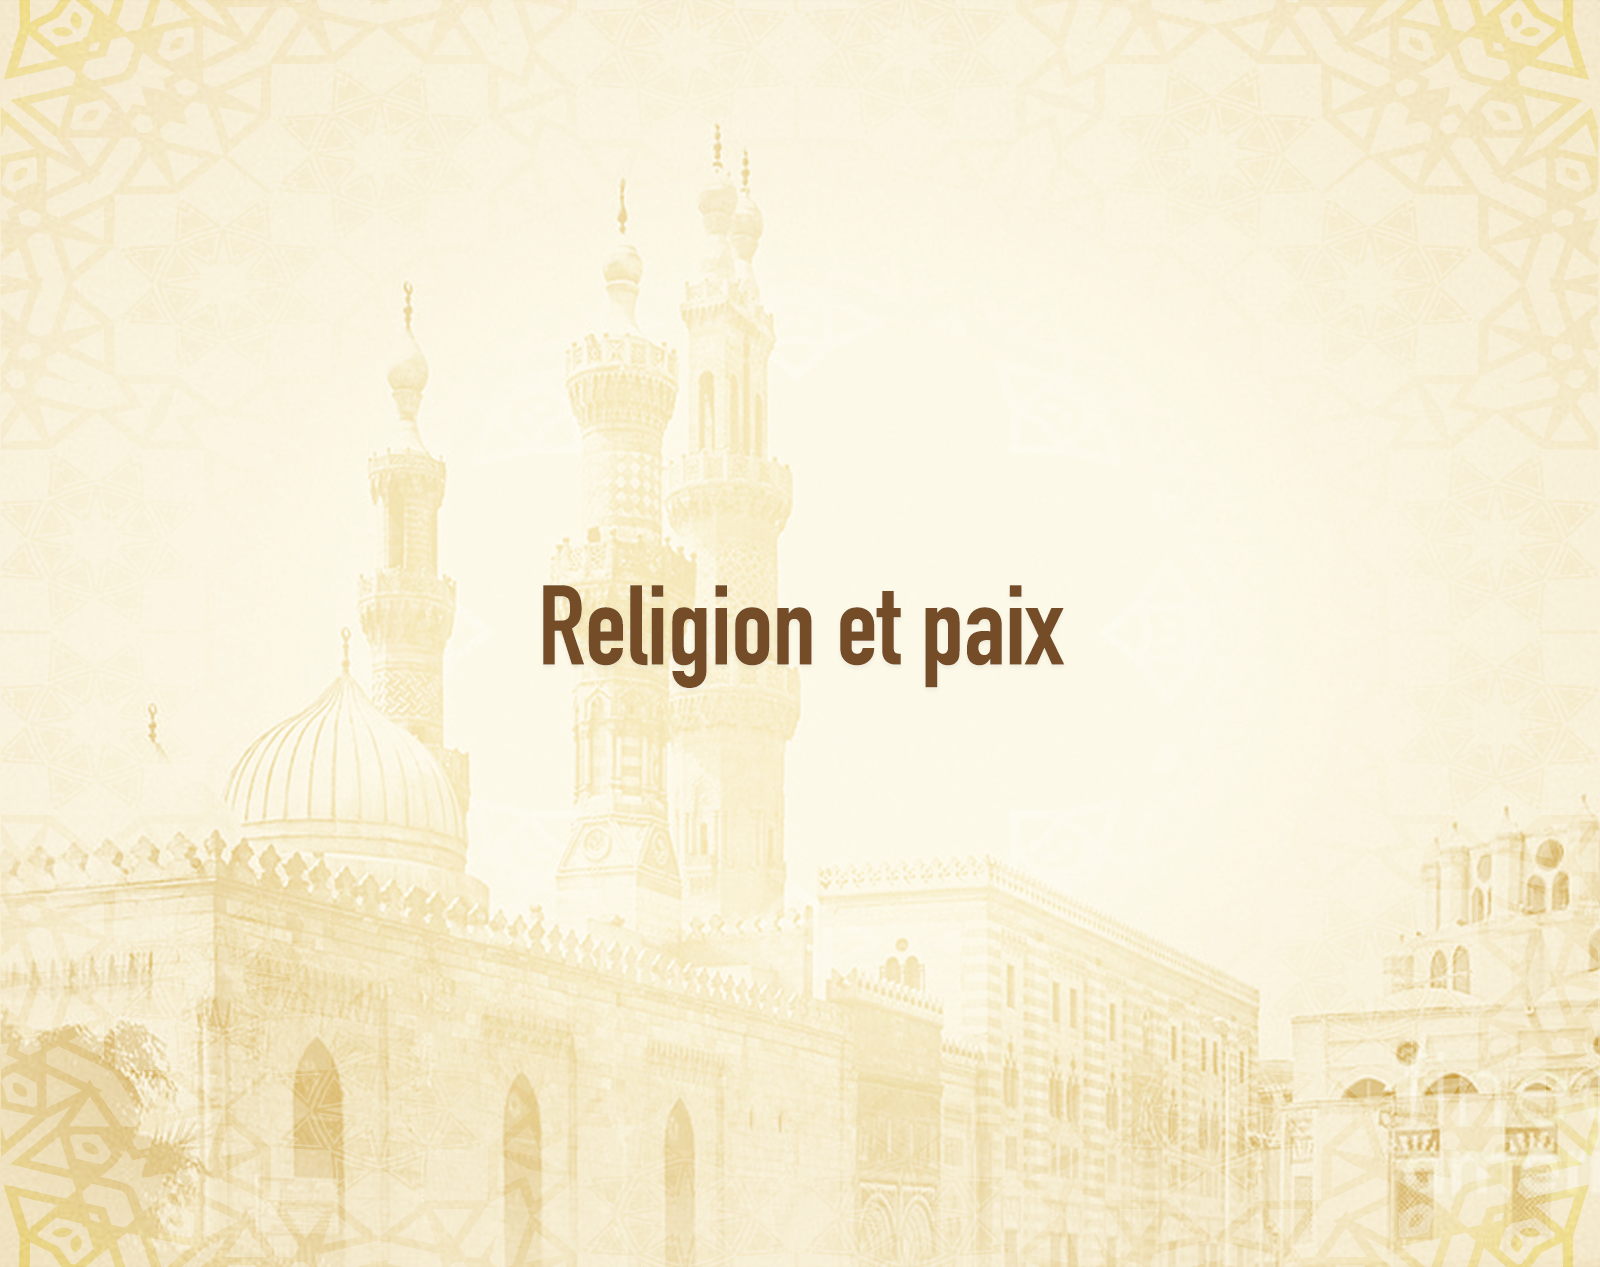 Religion et paix.png